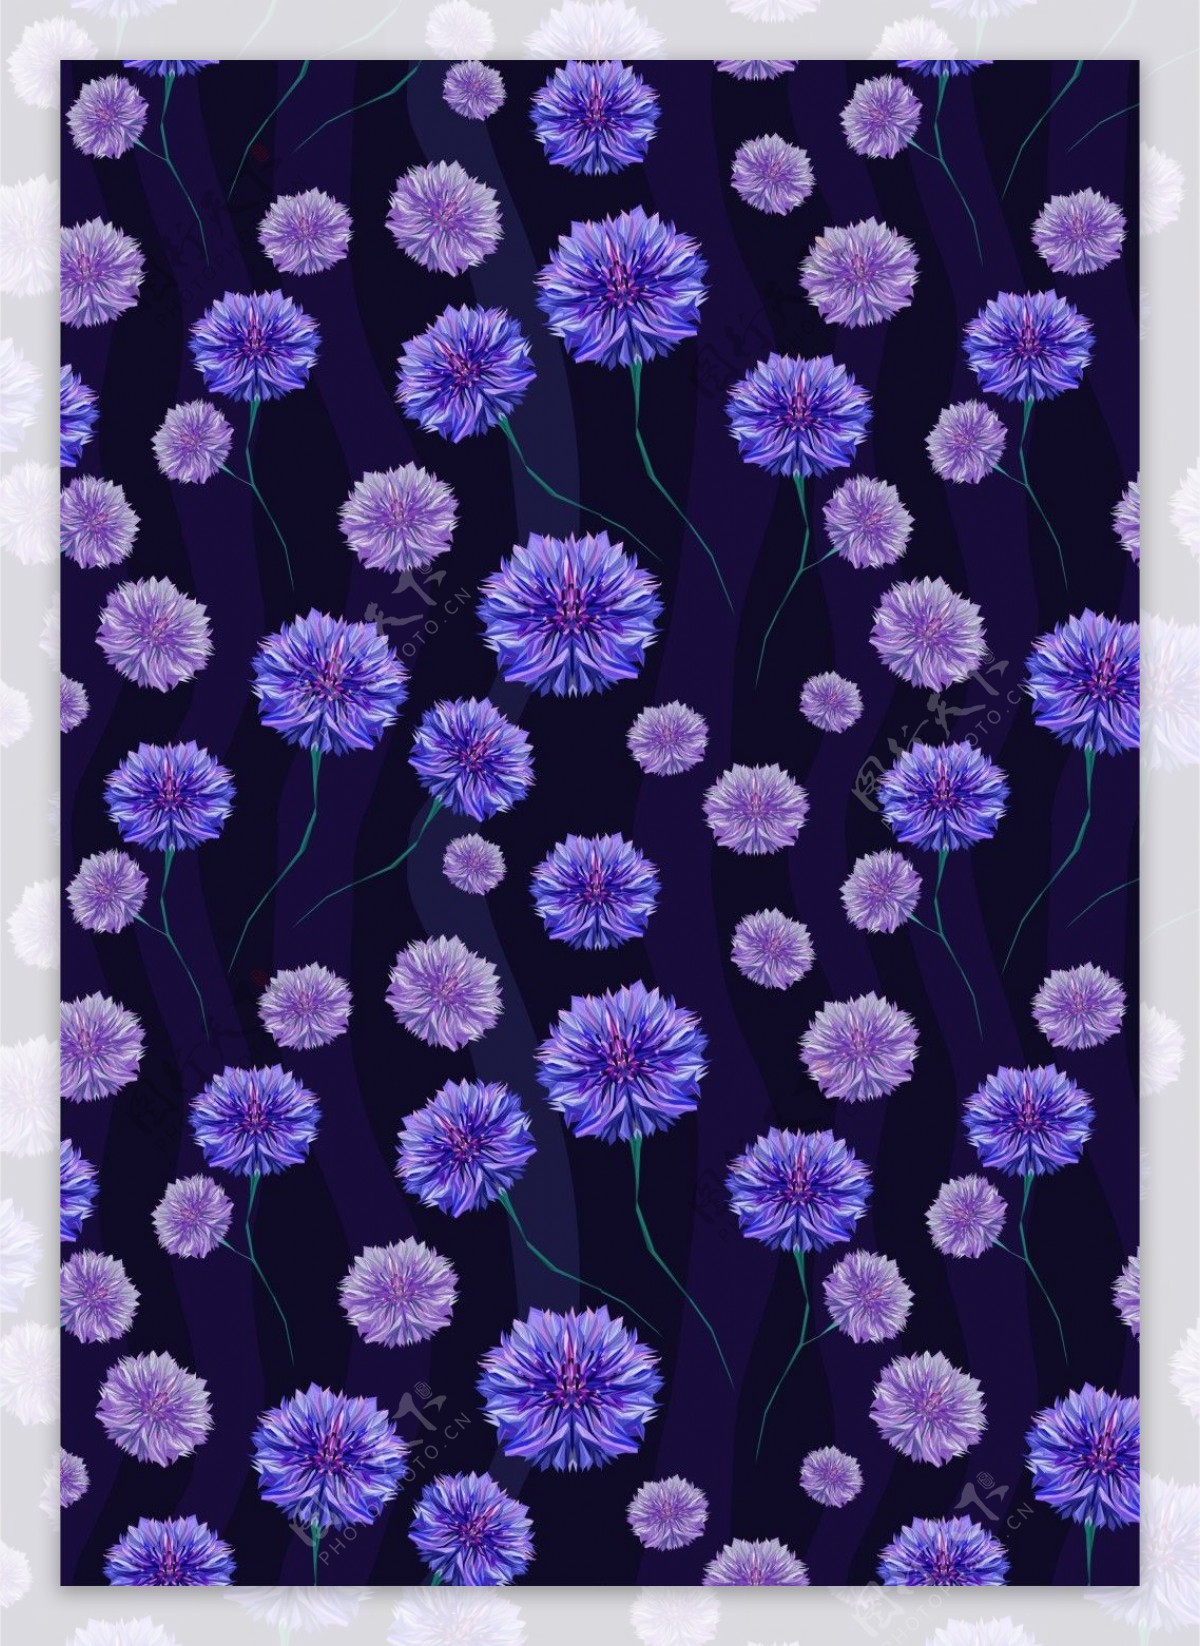 神秘美丽蓝紫色花朵广告背景